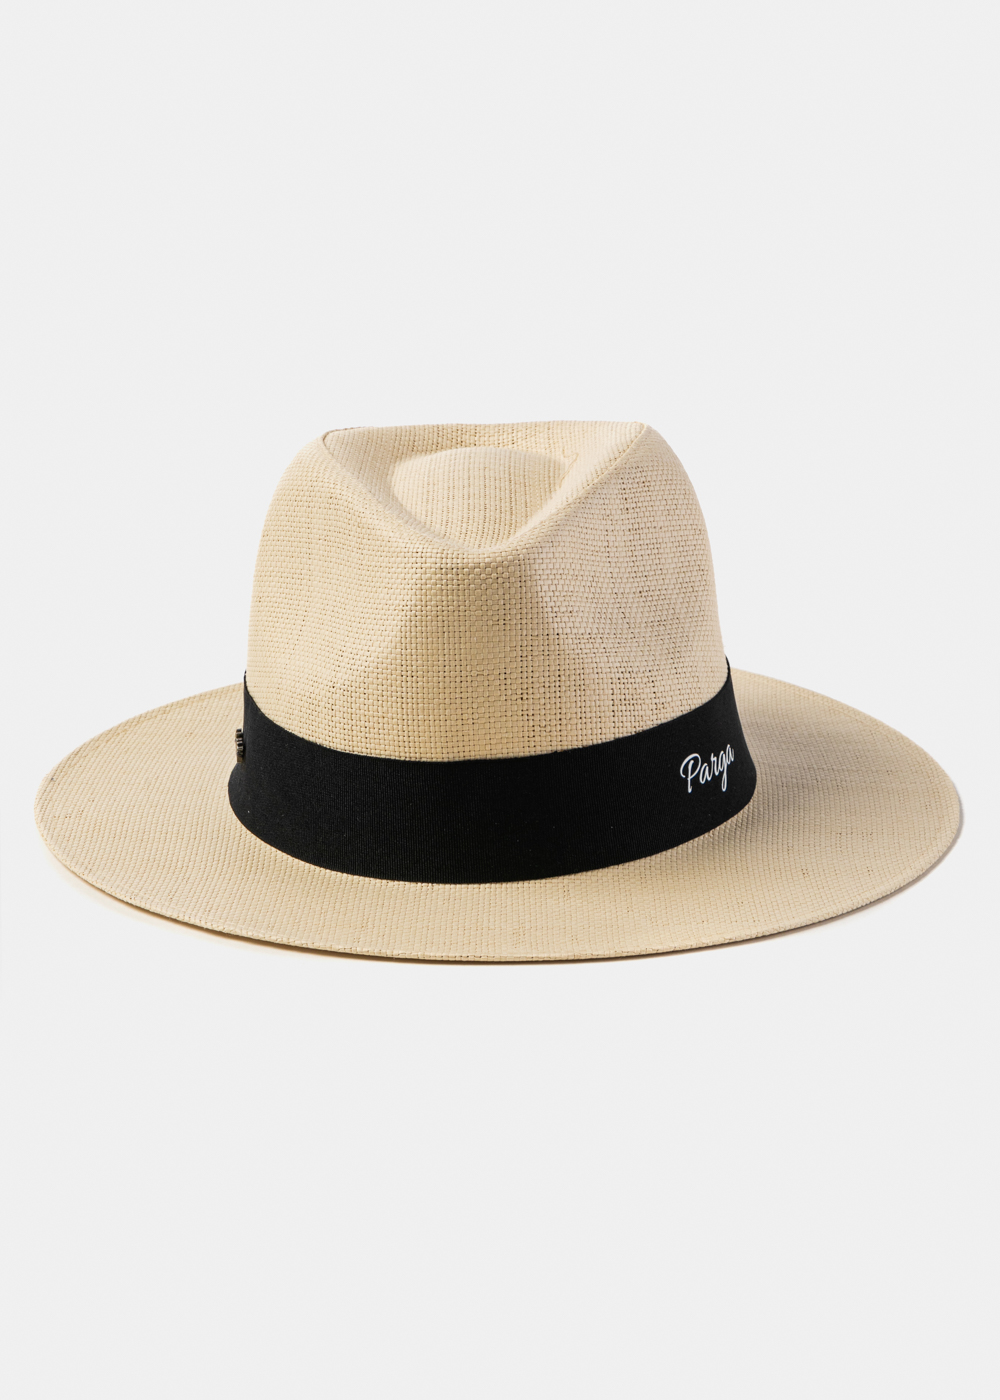 Beige "Parga" Panama Hat